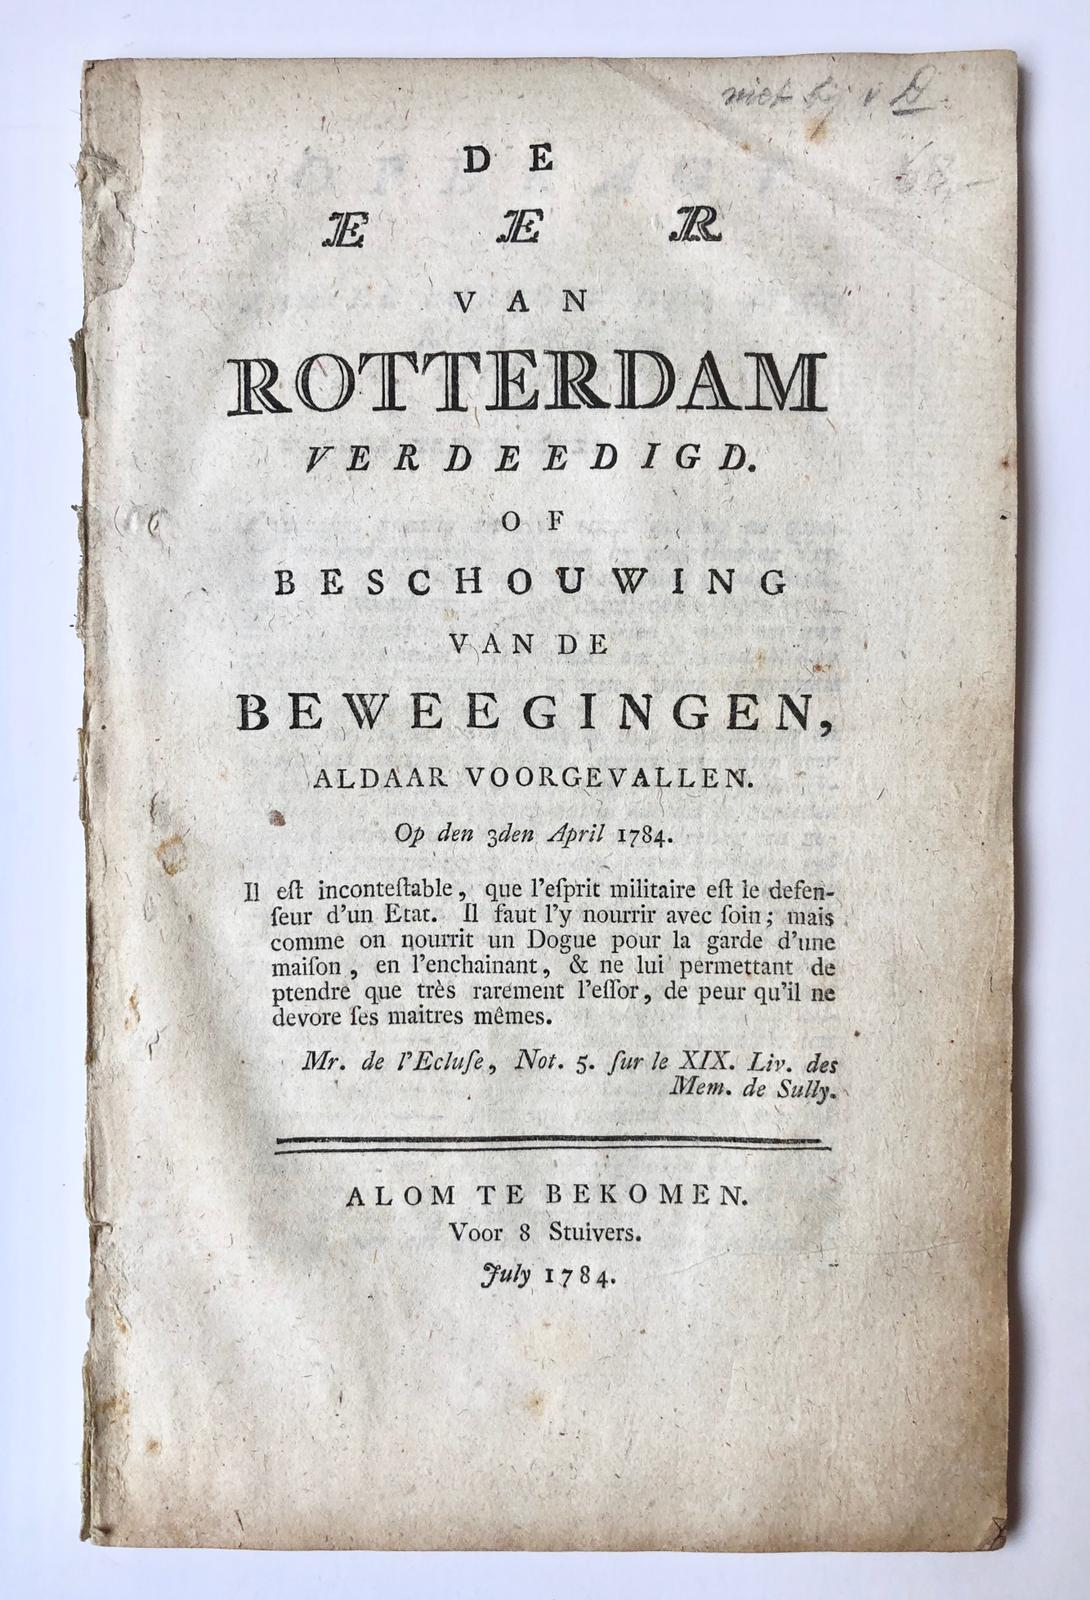 [Rotterdam, patriots, patriotten, 1784] De eer van Rotterdam verdeedigd. Of beschouwing van de beweegingen, aldaar voorgevallen. Op den 3den April 1784, Alom te bekomen voor 8 Stuivers, 59 pp.